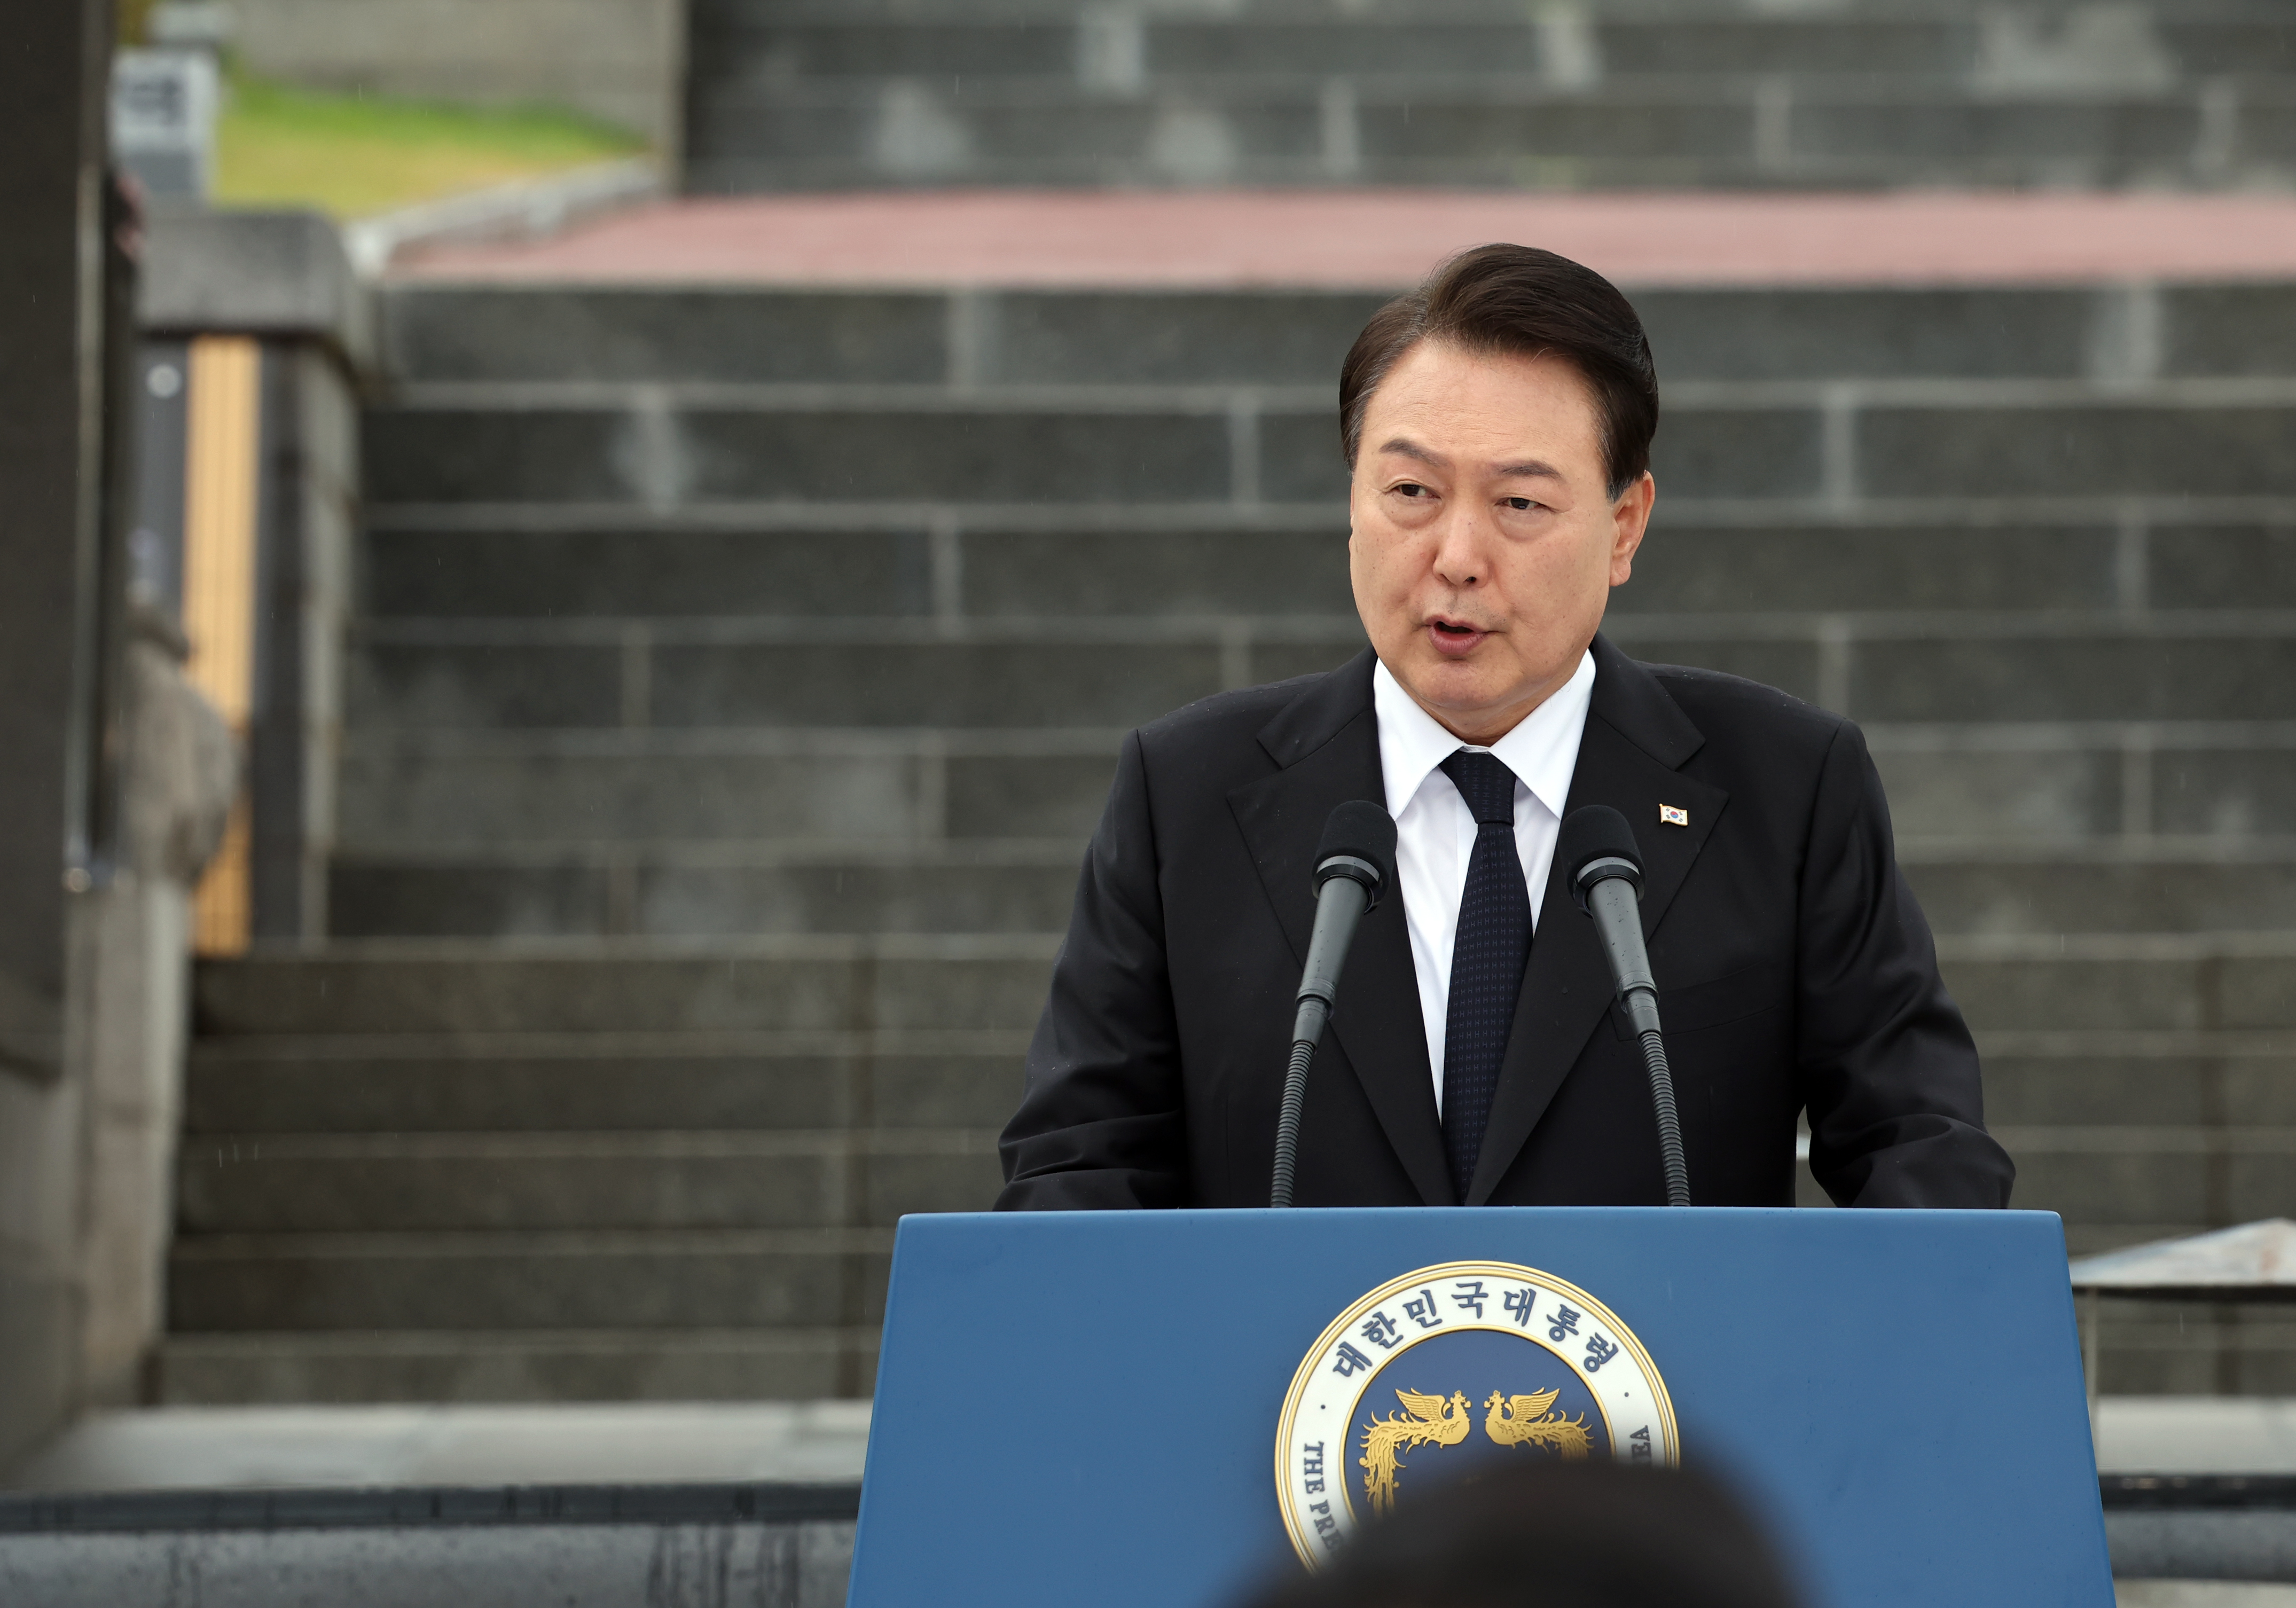 5·18민주화운동 기념식에서 기념사하는 윤석열 대통령